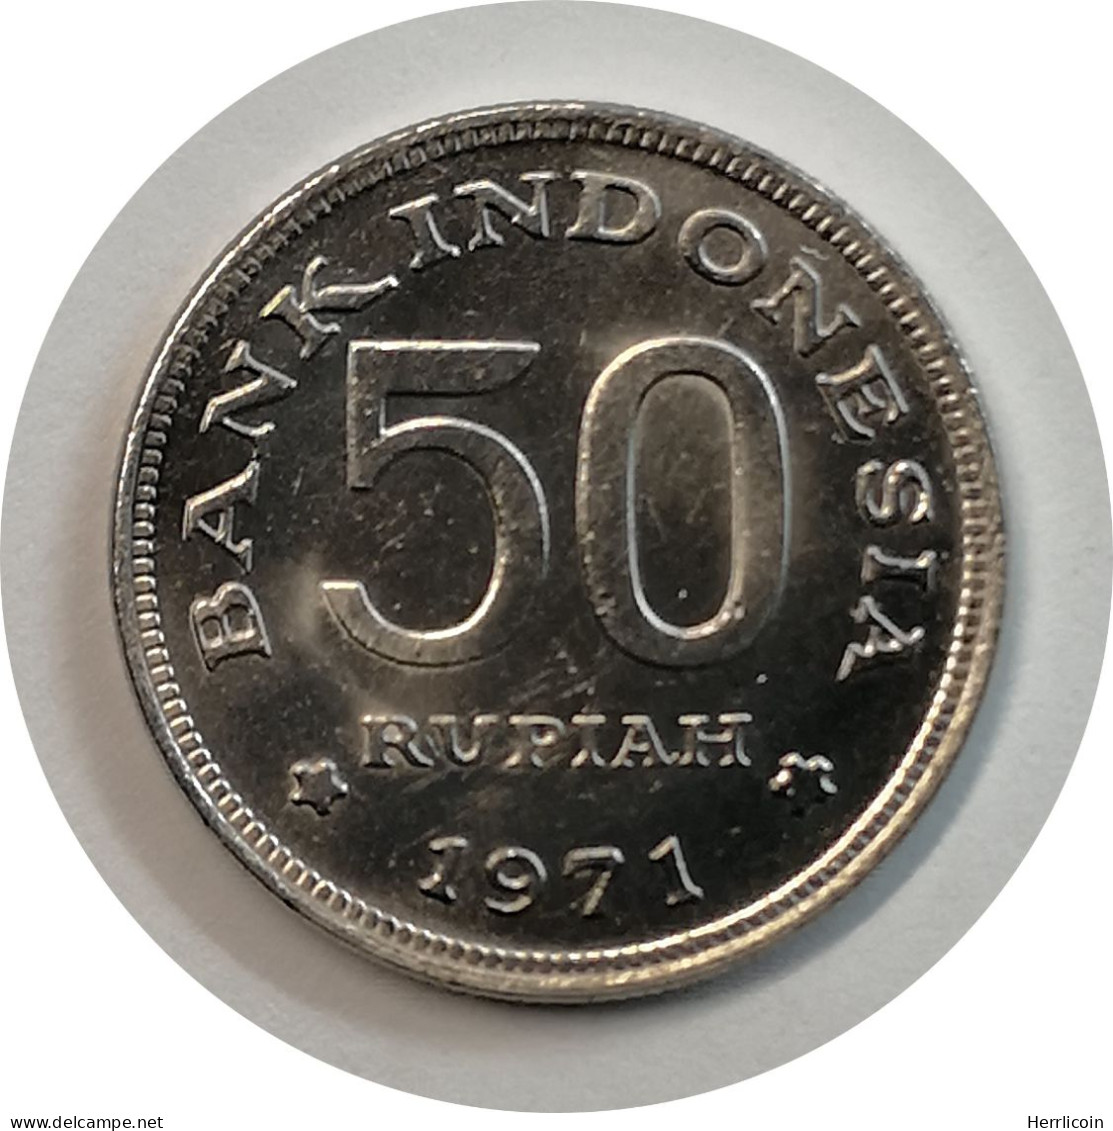 Monnaie Indonésie - 1971 - 50 Rupiah - Indonesien